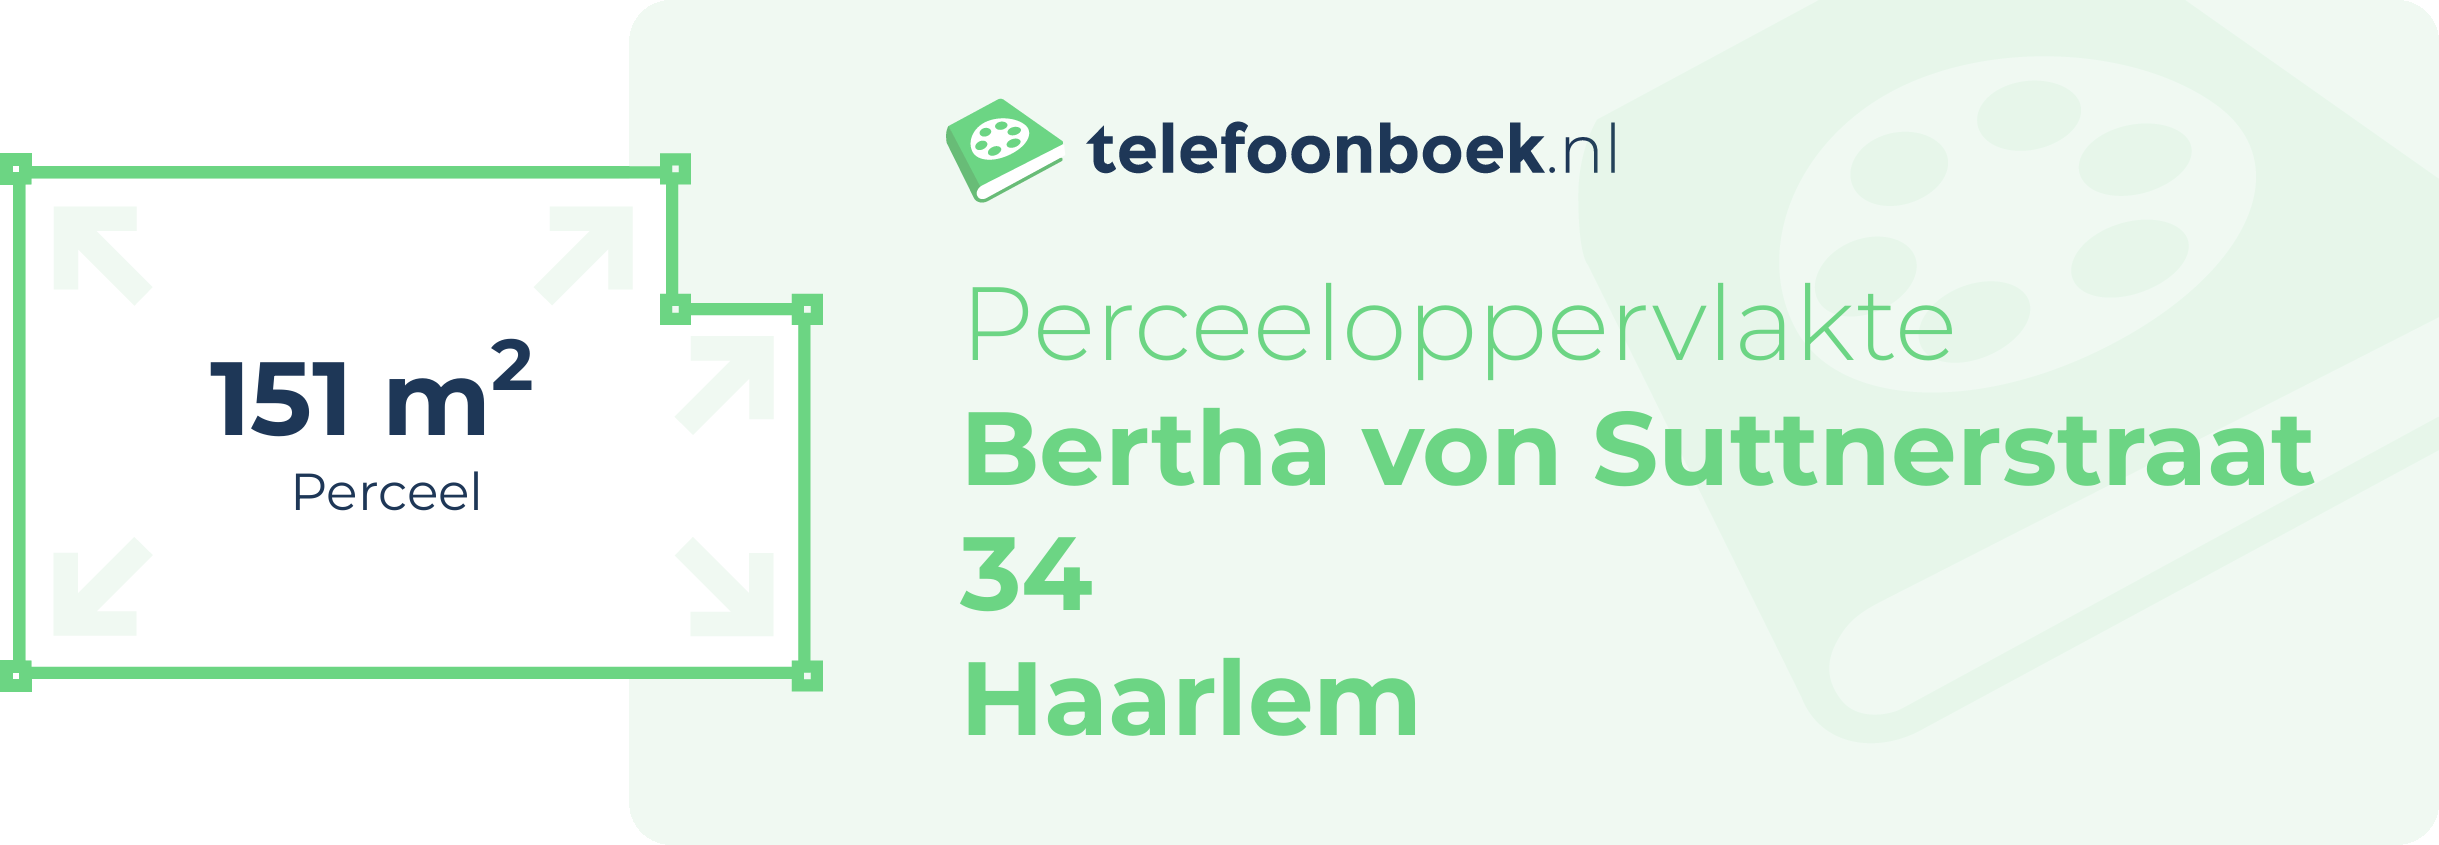 Perceeloppervlakte Bertha Von Suttnerstraat 34 Haarlem